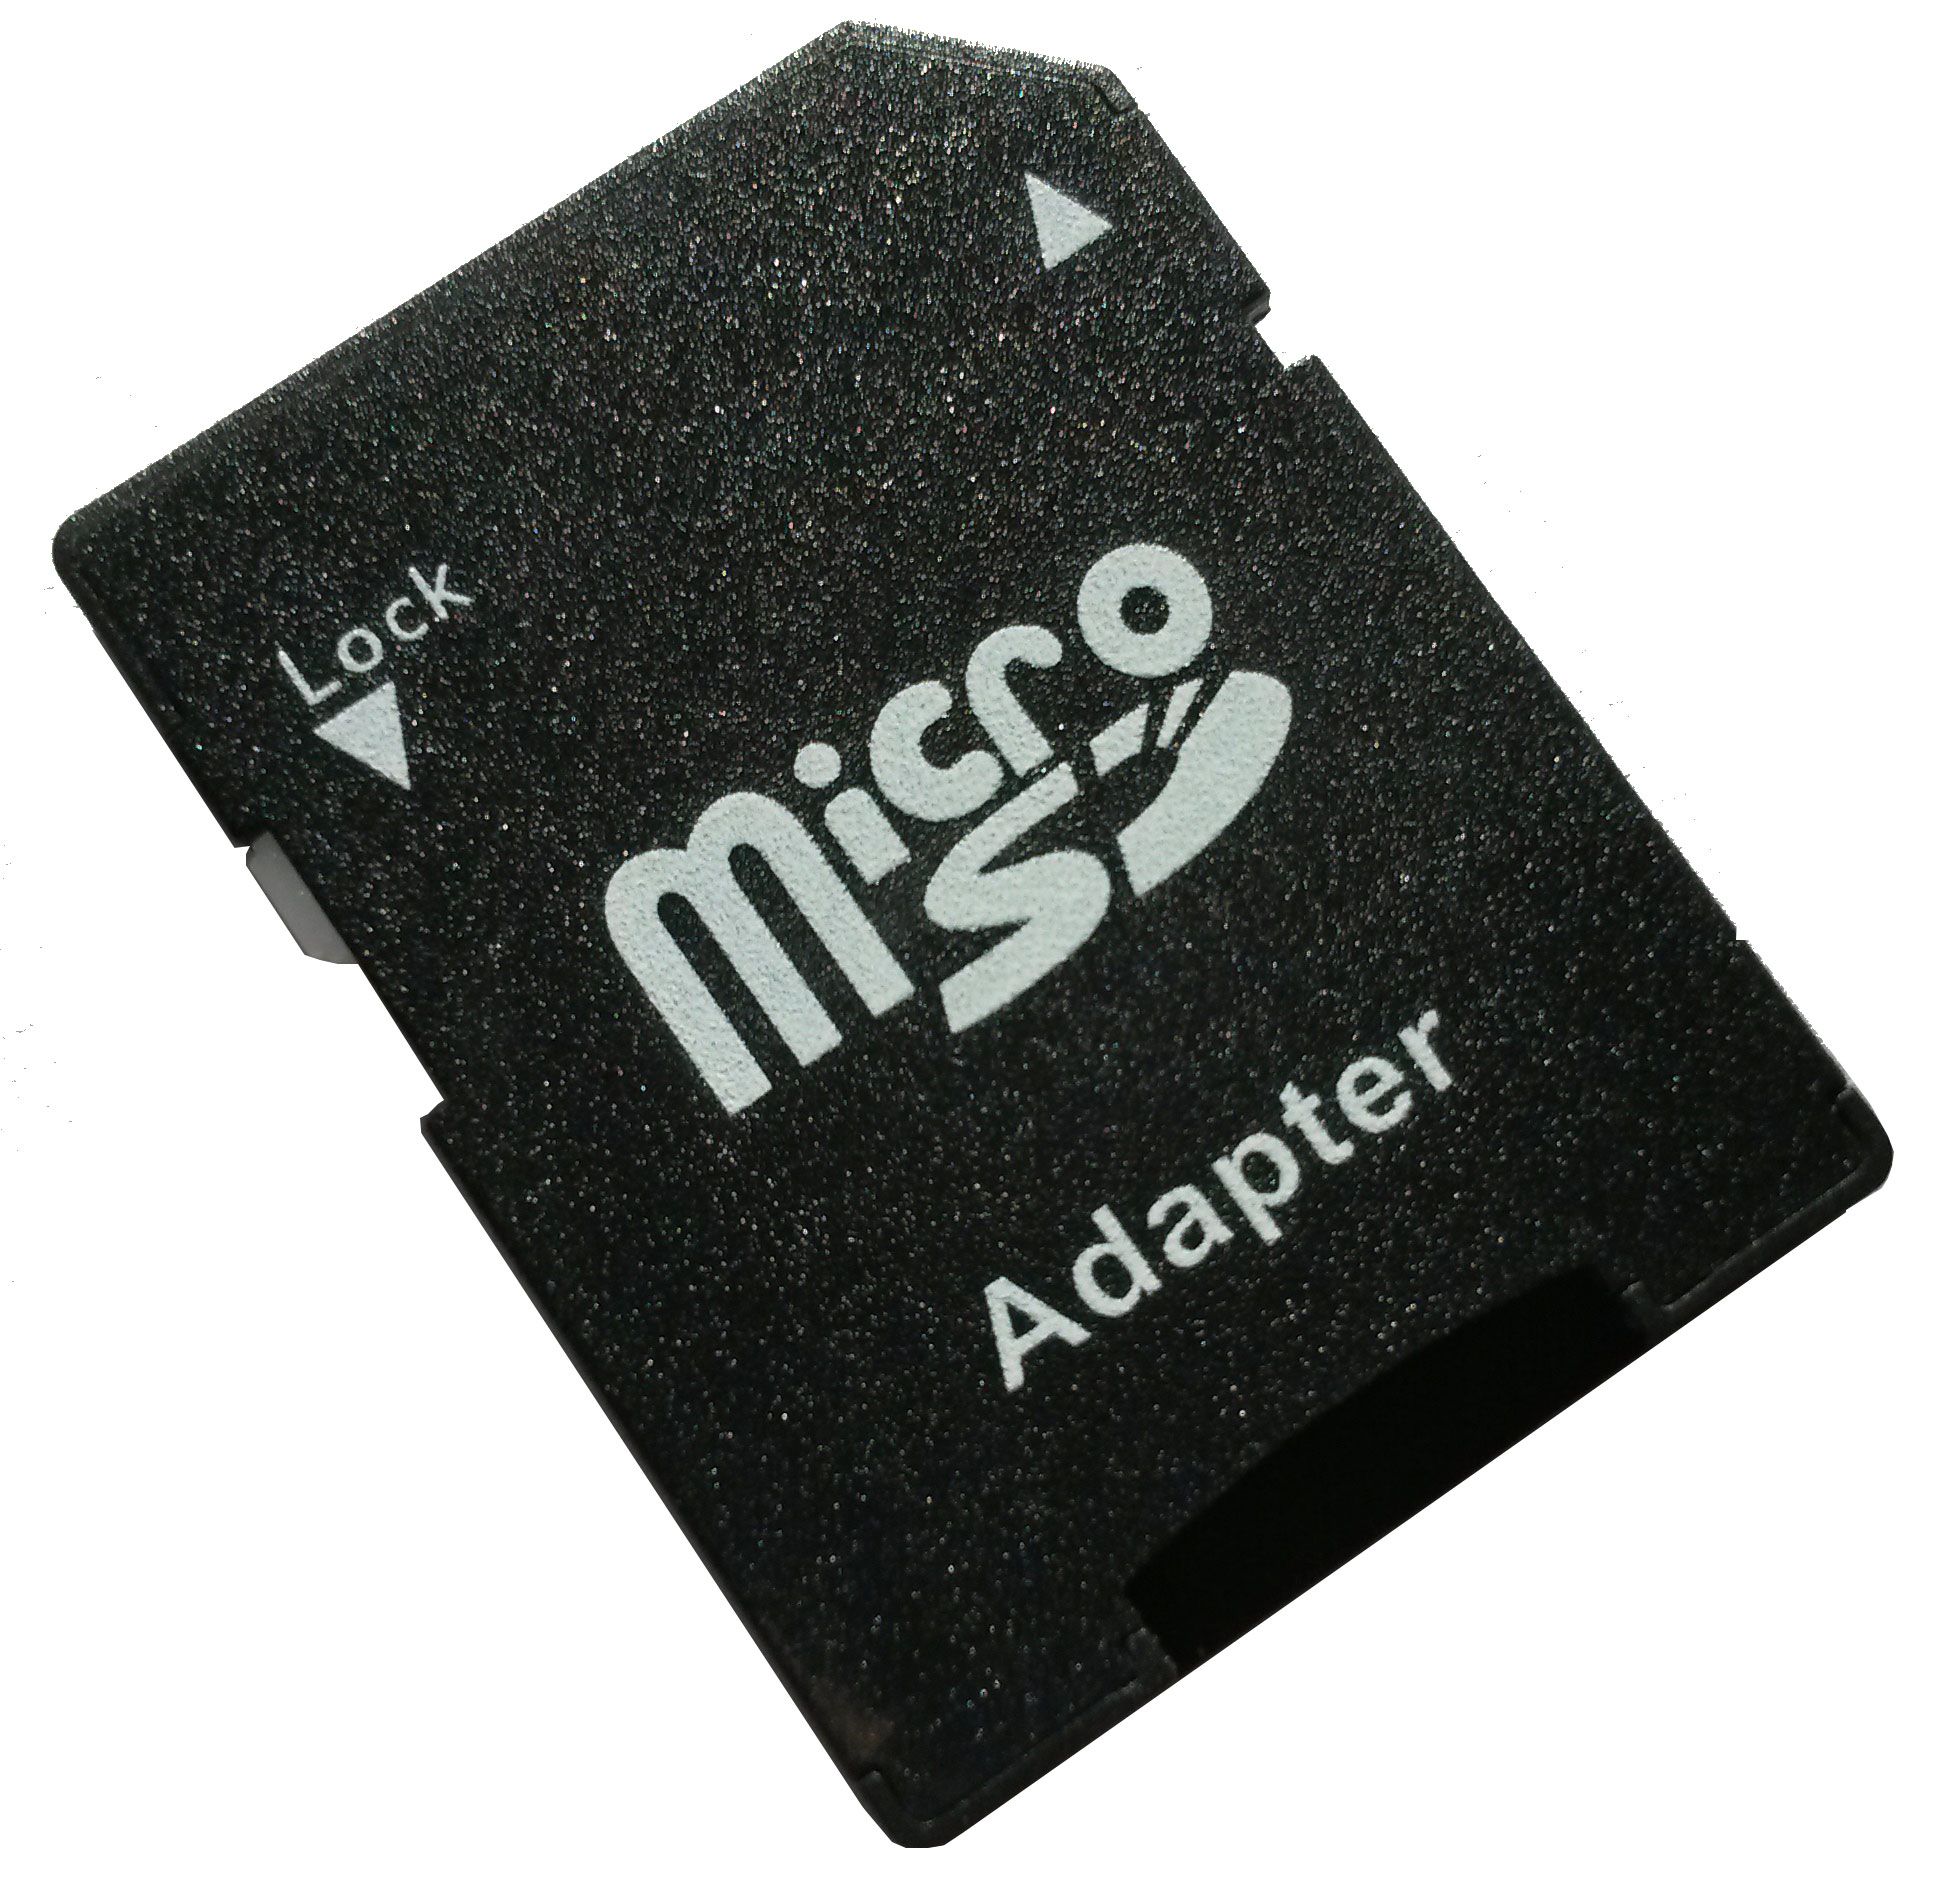 Флешки микро сд цена. SD И MICROSD Card переходник. SD Card адаптер MICROSD. Переходник MICROSD на SD. Адаптер под флешку микро СД.